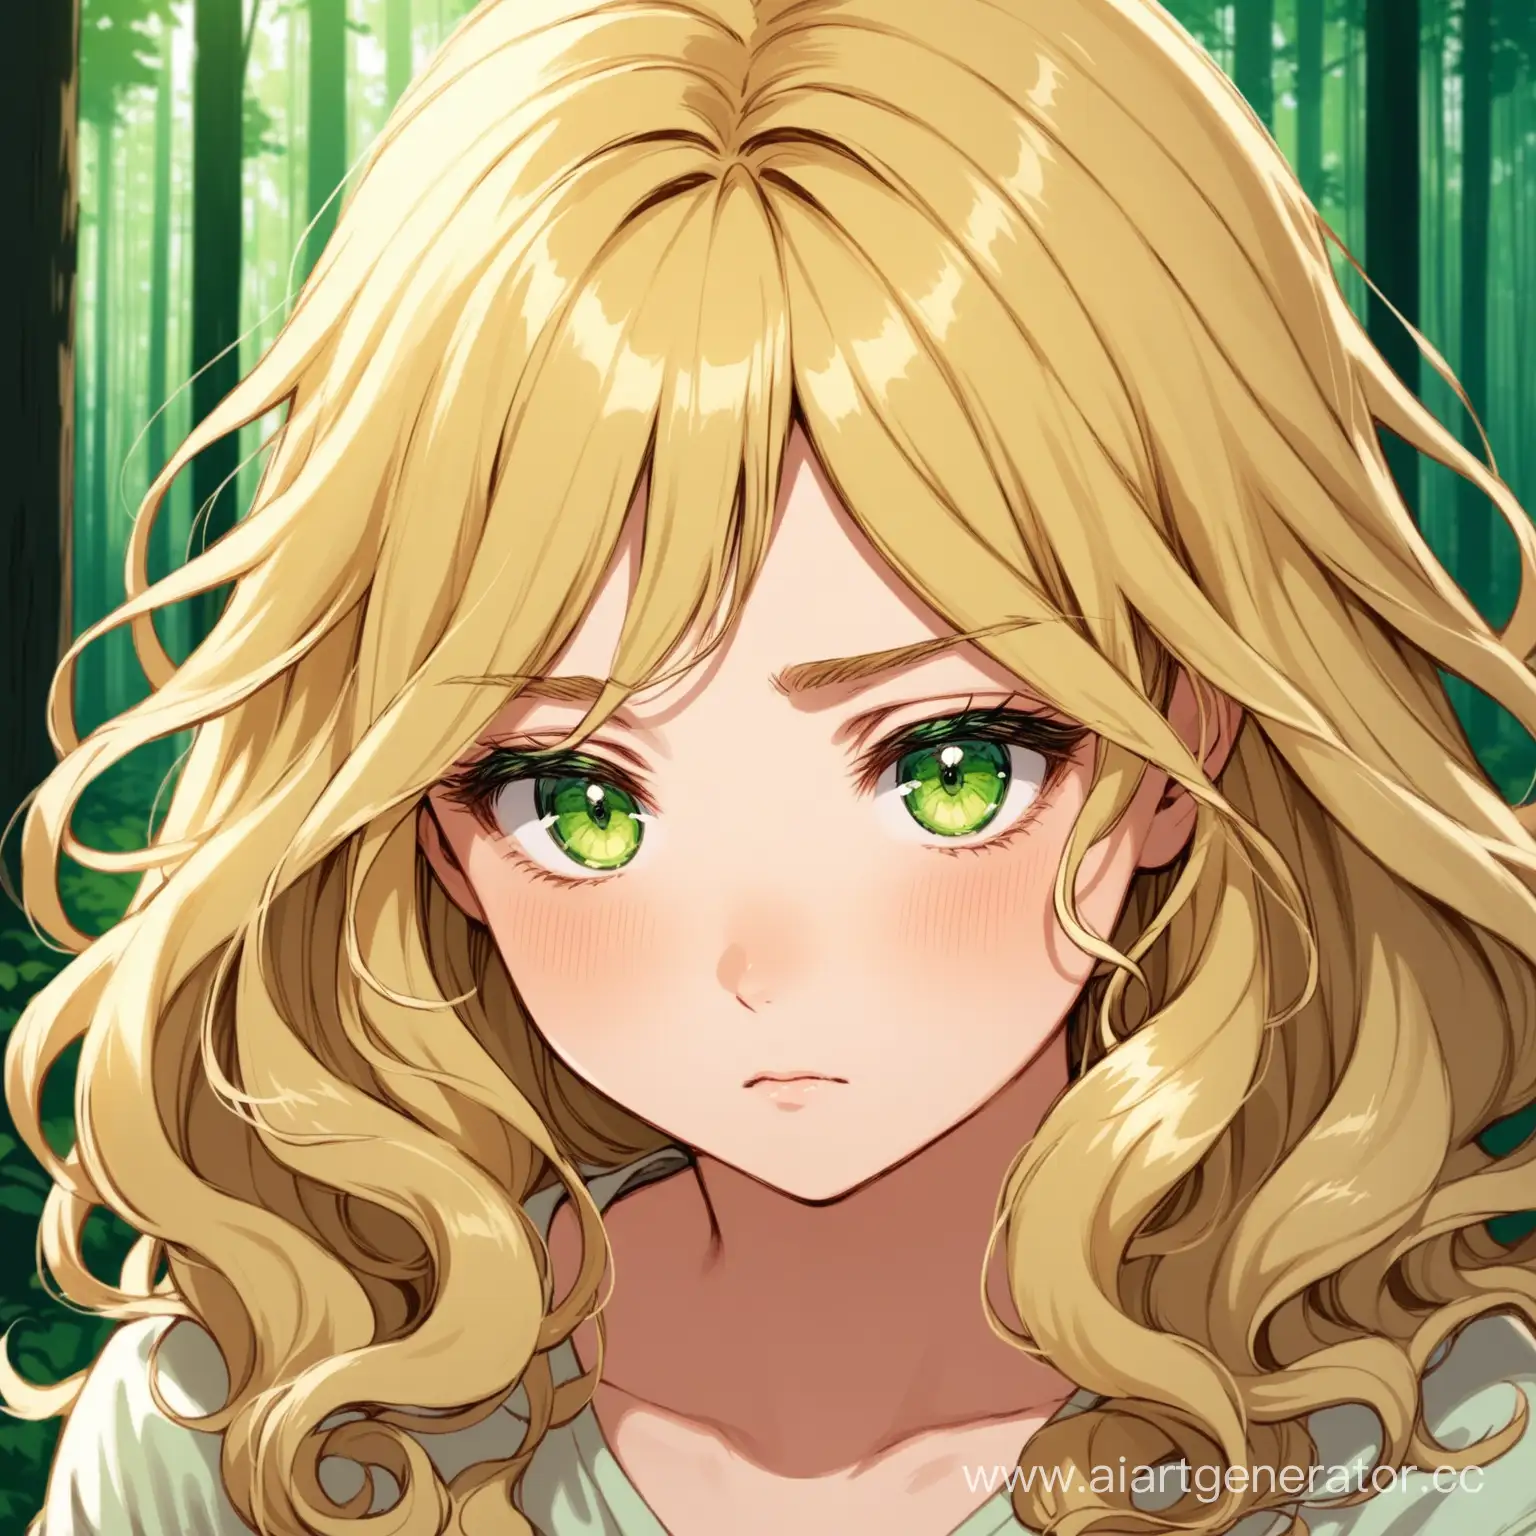 блонд с завитыми концами
усталые глаза
тёмно зелёные глаза
на фоне леса